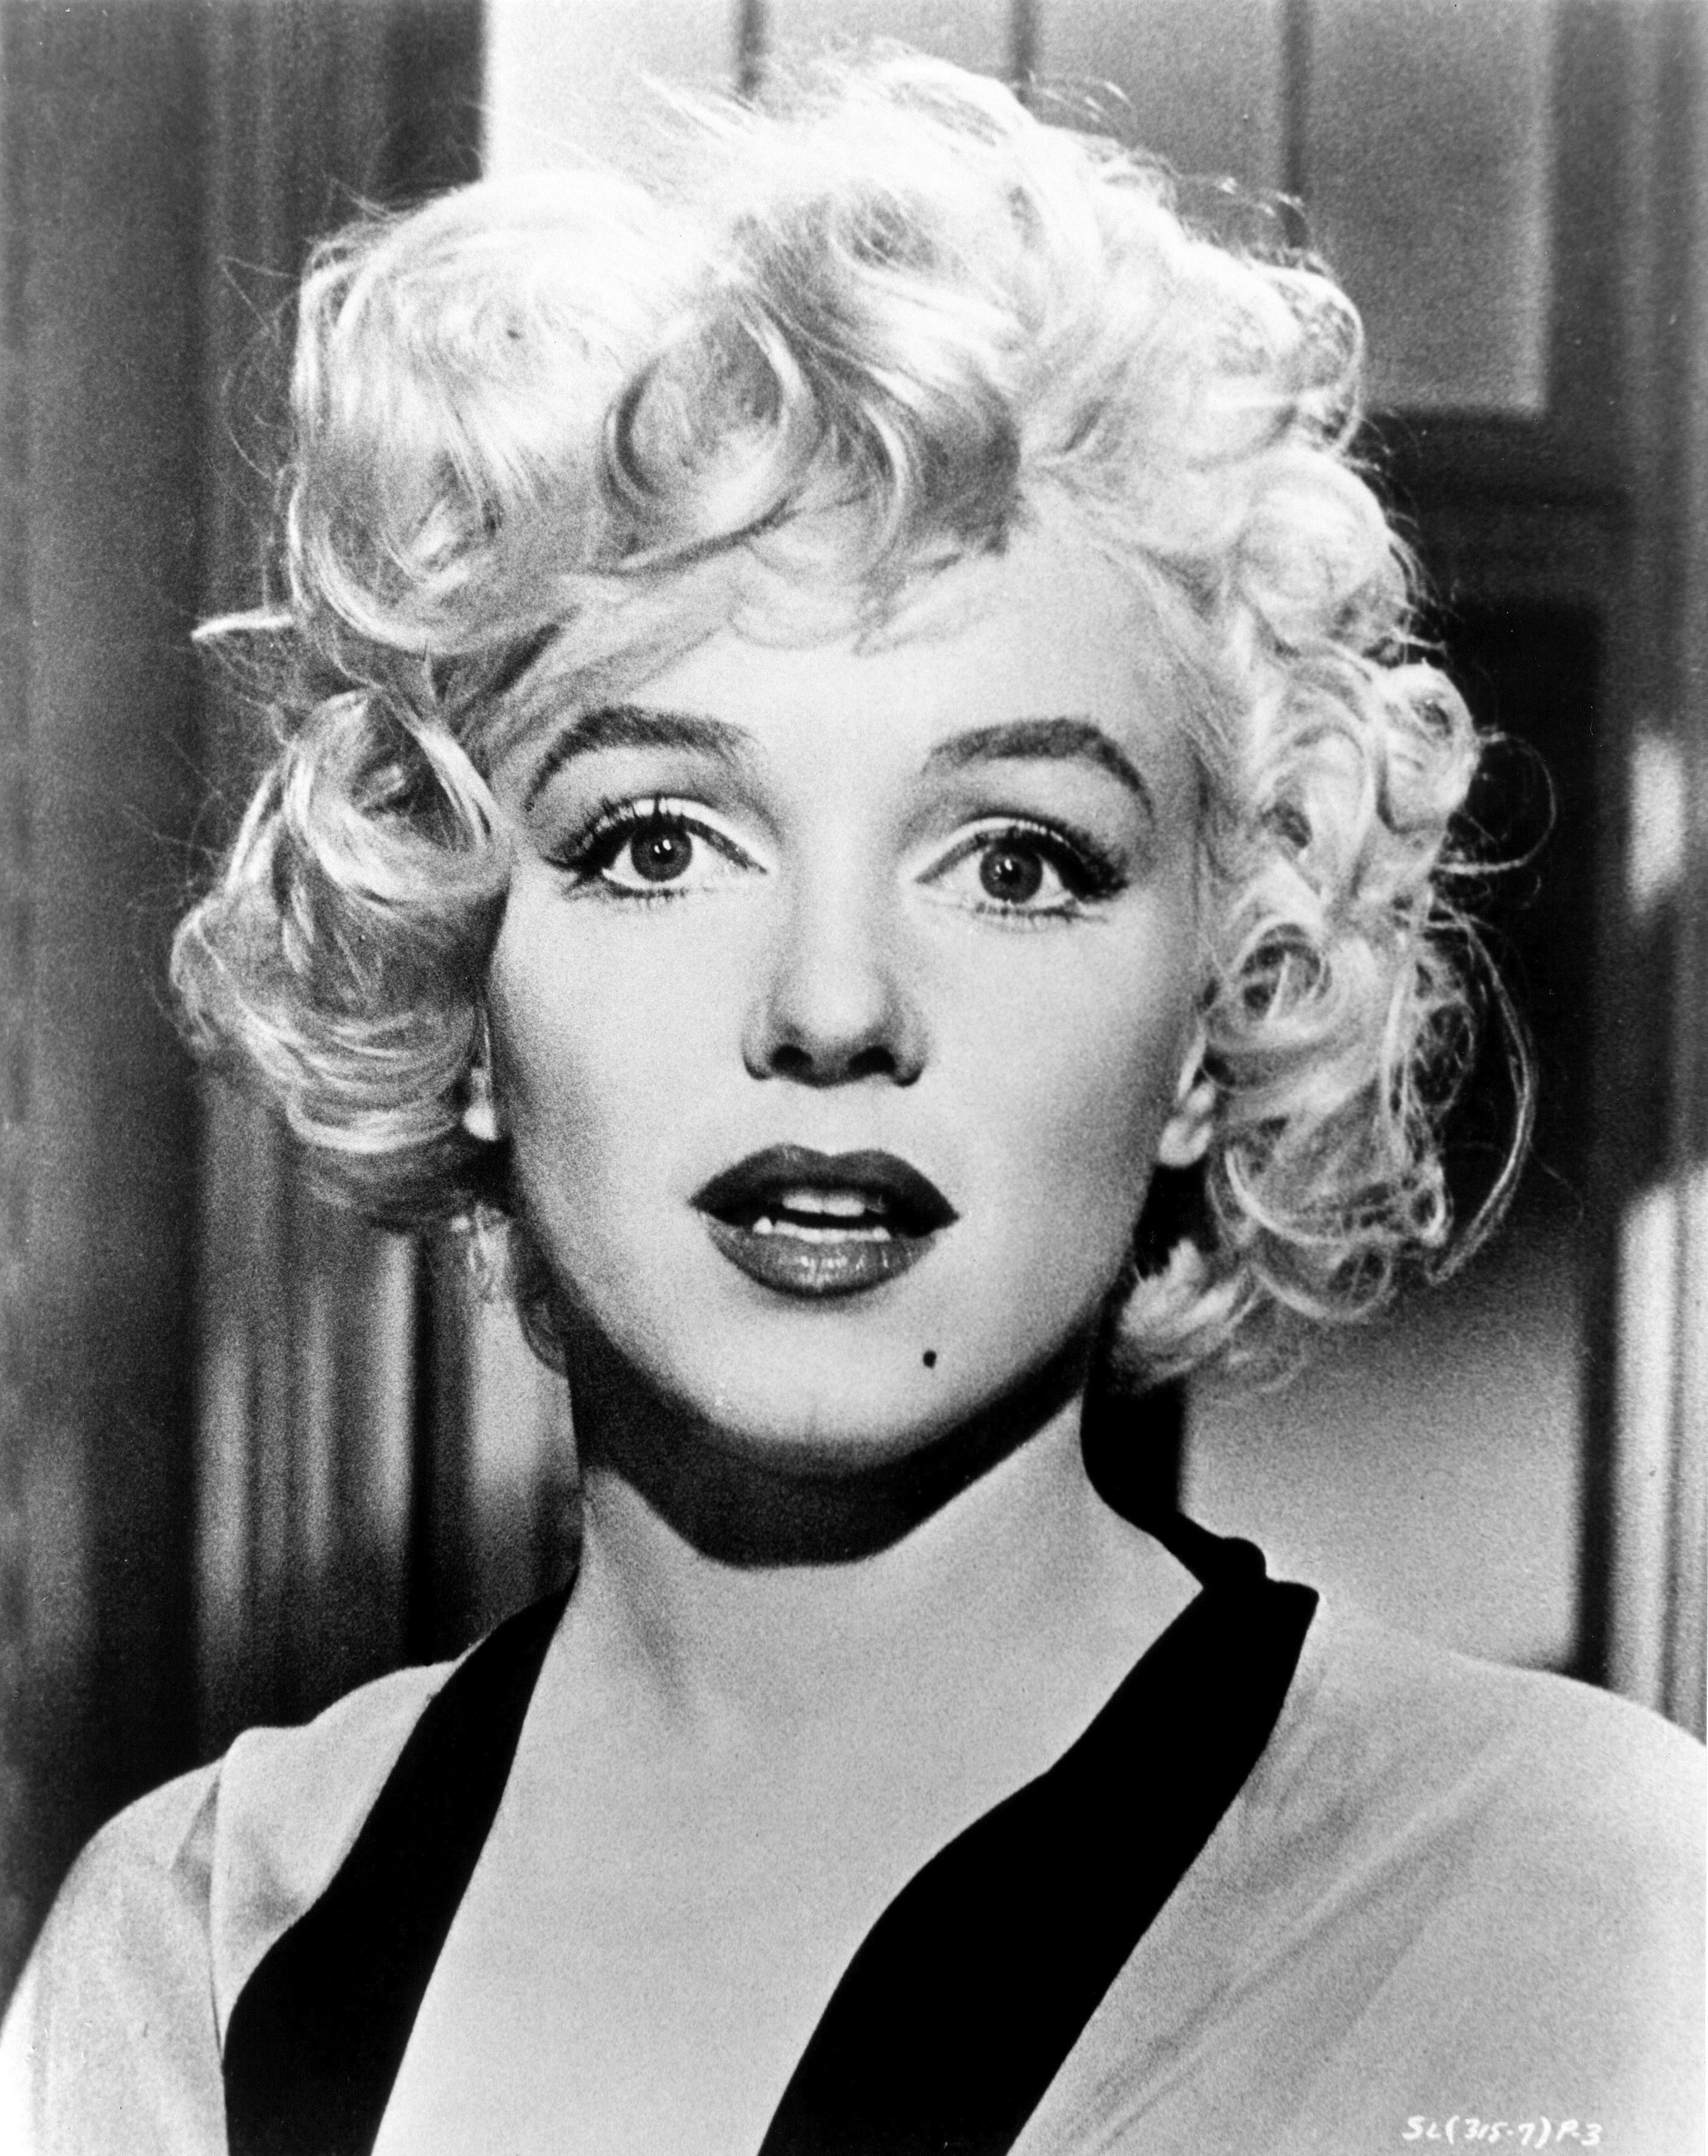 Un meraviglioso primo piano che Wilder dedicò a Marilyn Monroe